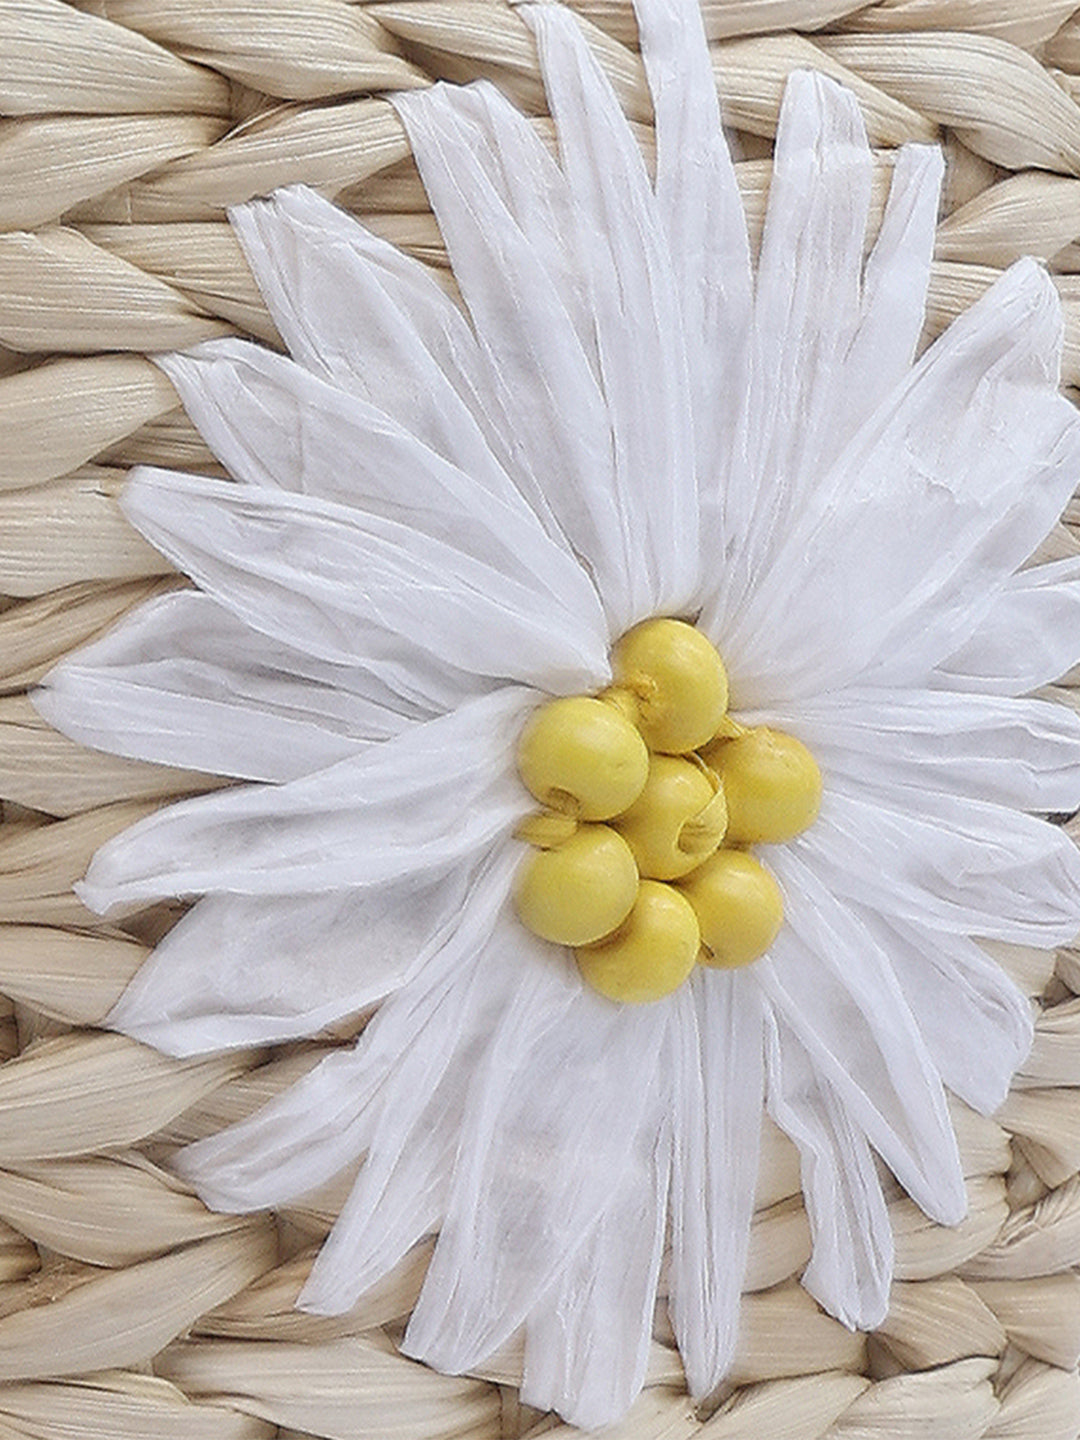 floral woven basket nucket bag#color_beige